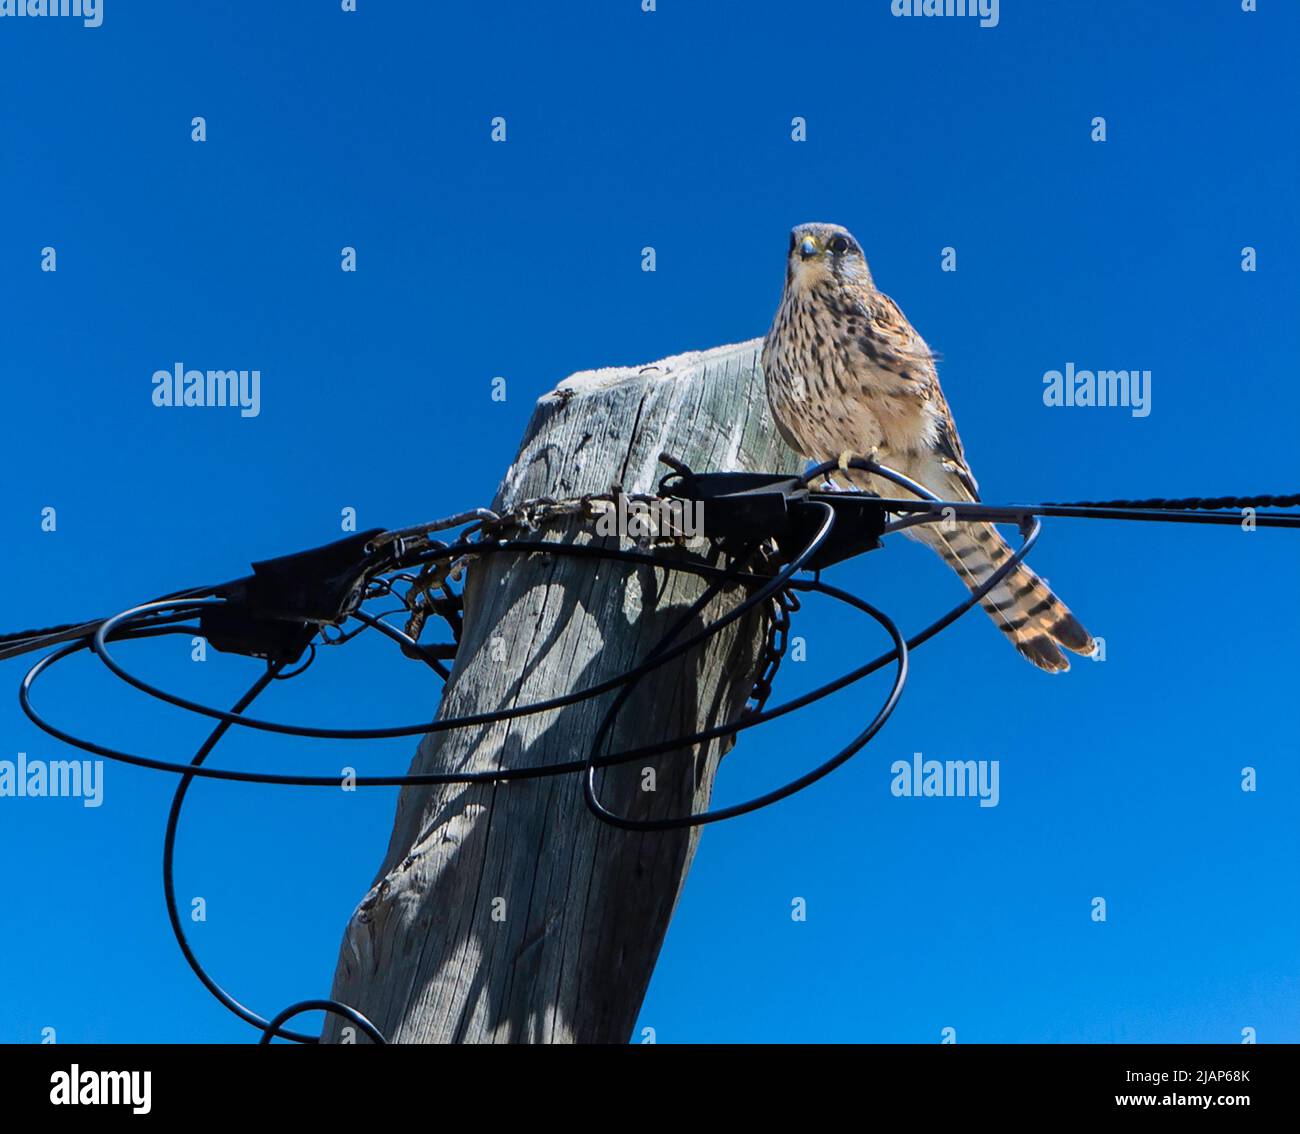 Ein junger Kestrel-Vogel, der auf Elektrokabeln mit einem klaren blauen Himmel im Hintergrund thront. Platz für Kopie. Stockfoto